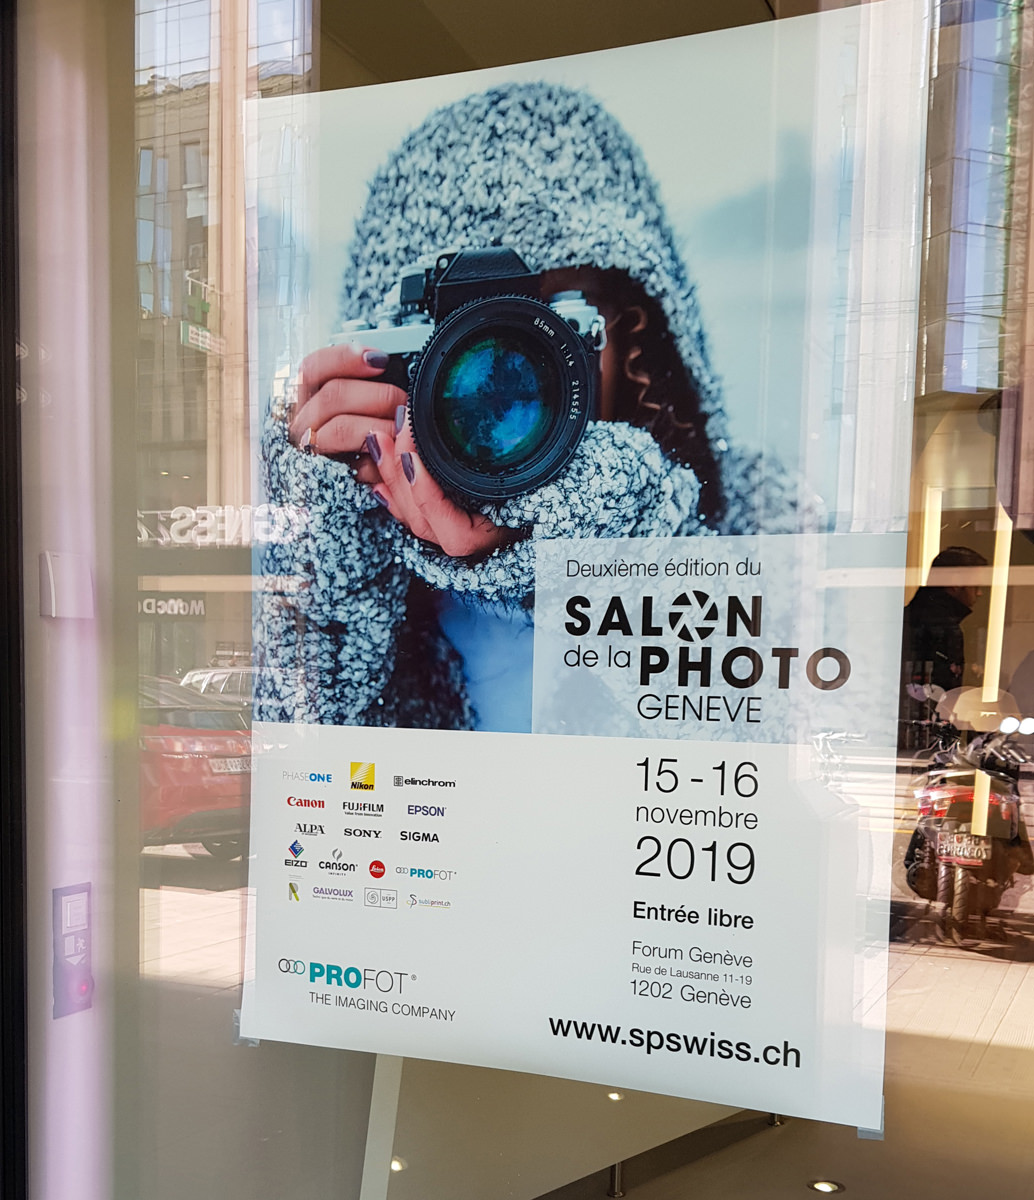 Salon de la photo - Genève - Suisse